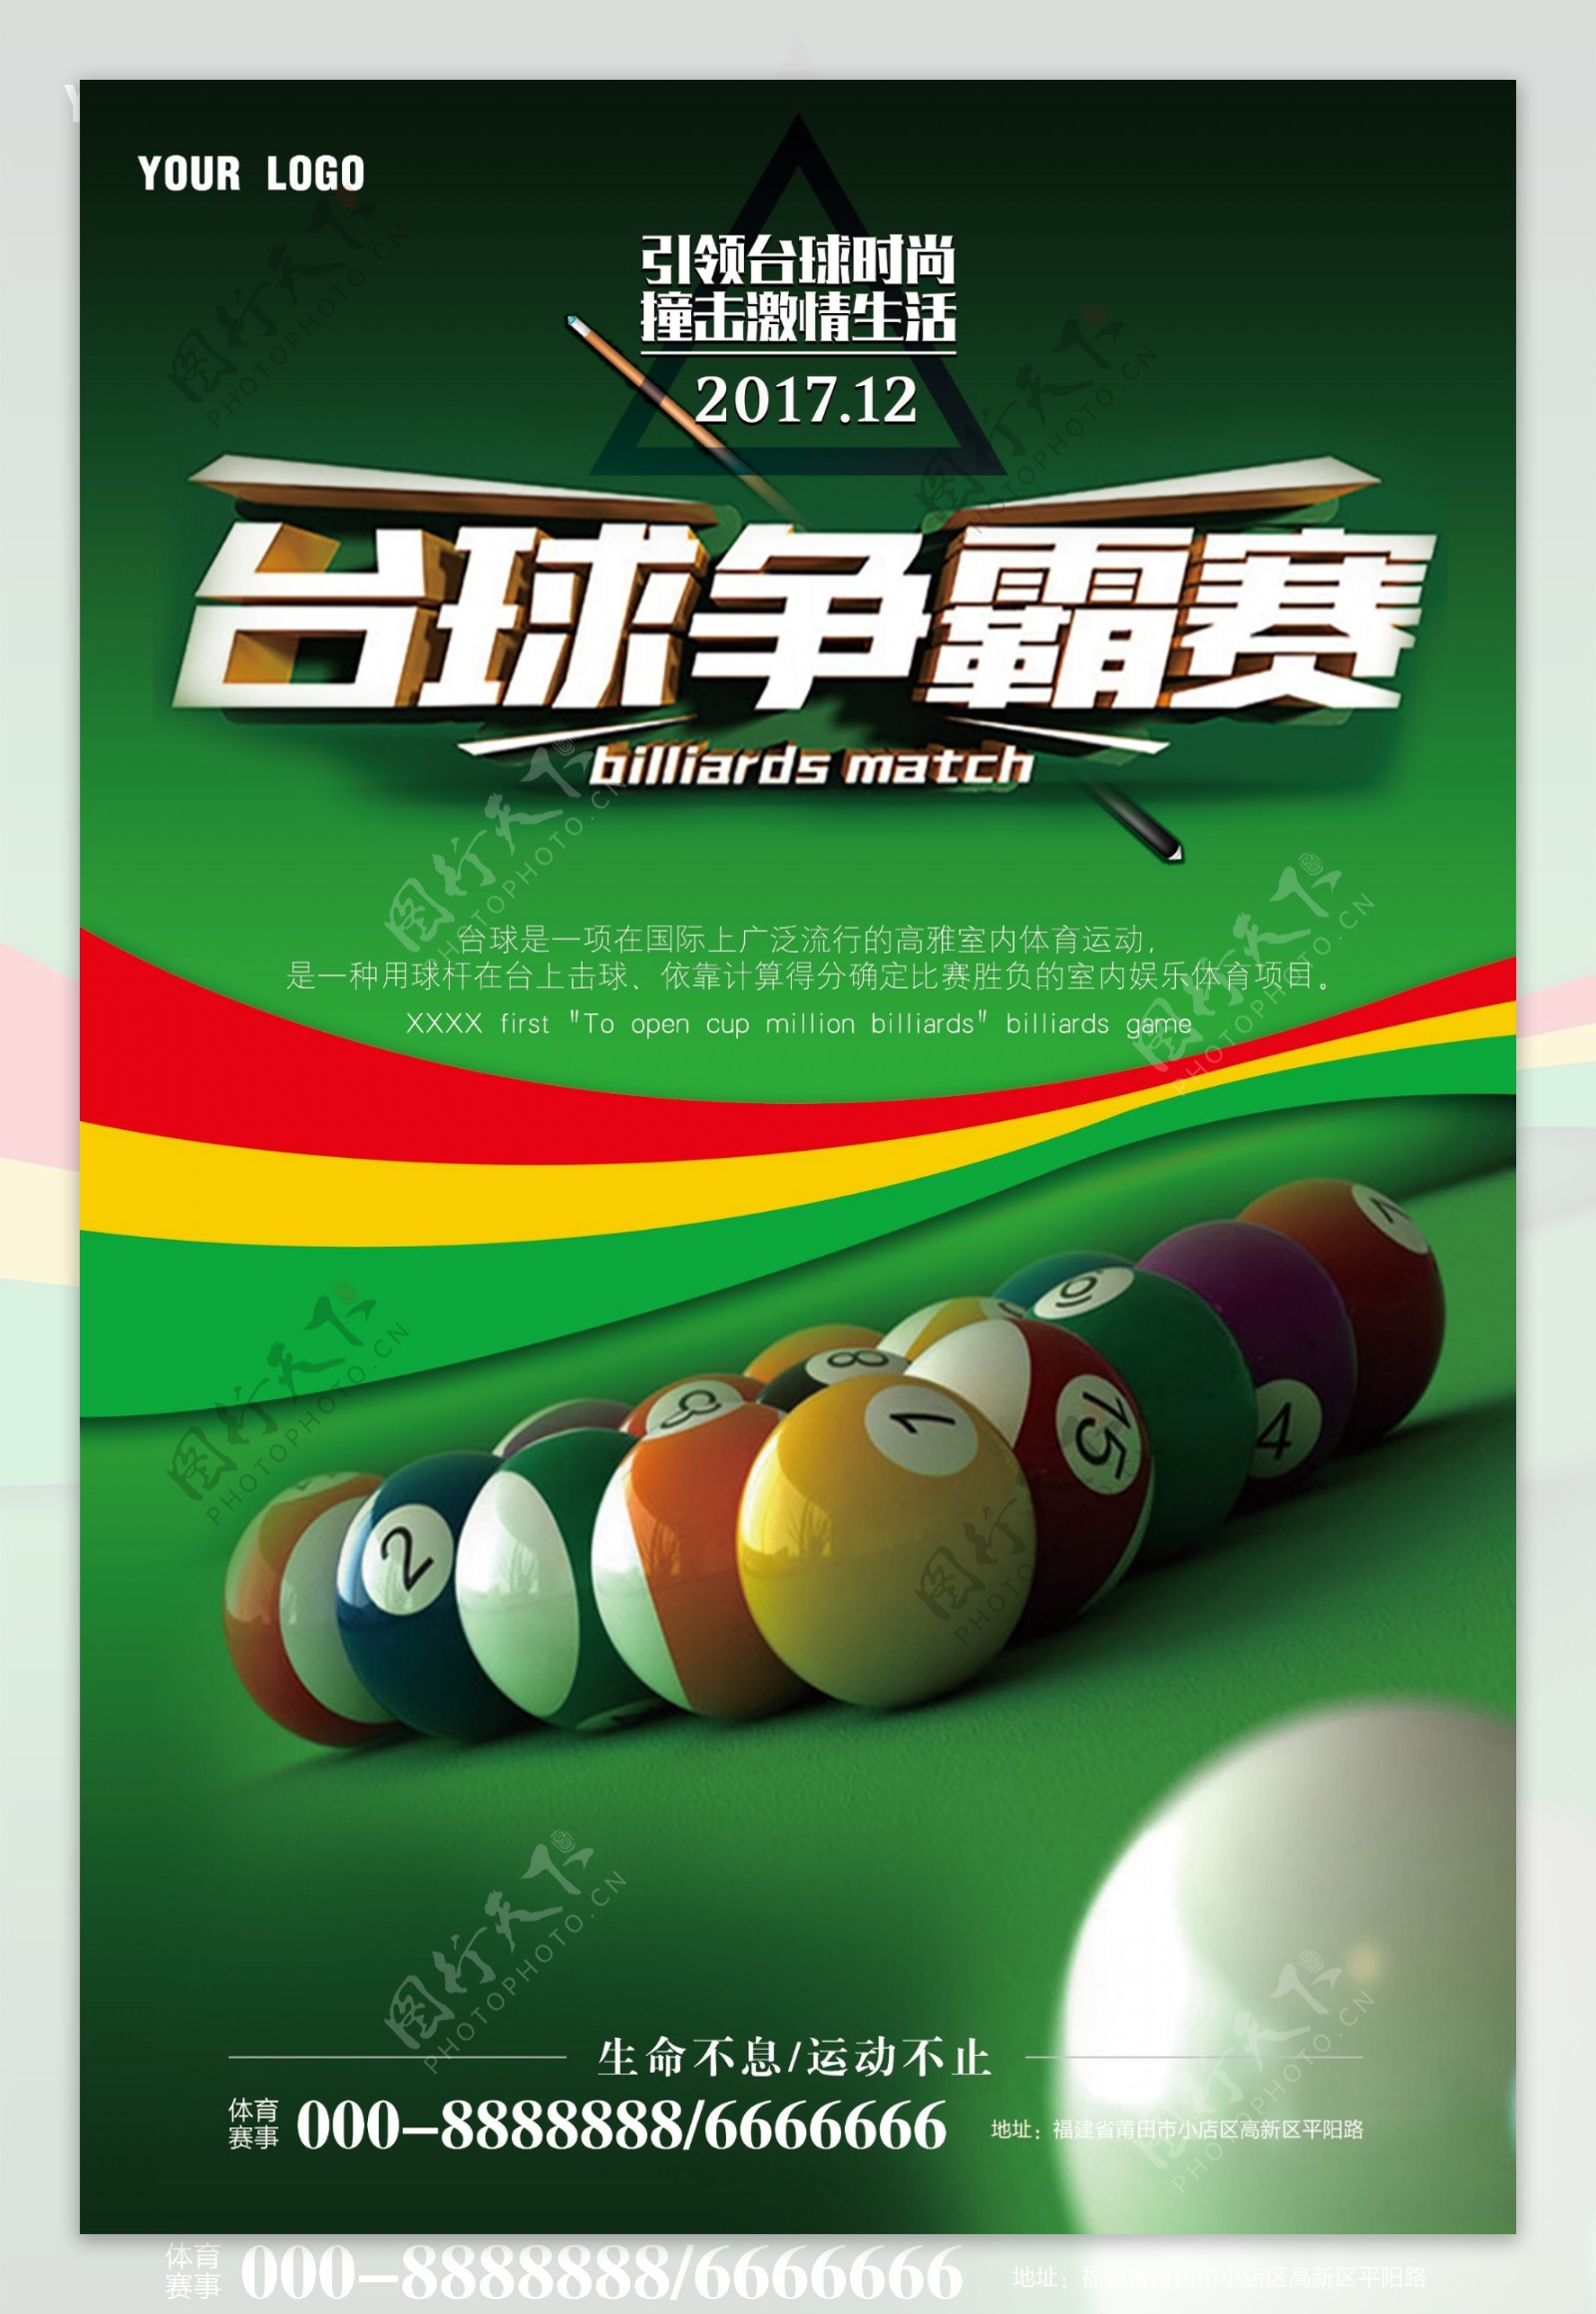 体育运动台球争霸赛宣传海报模板